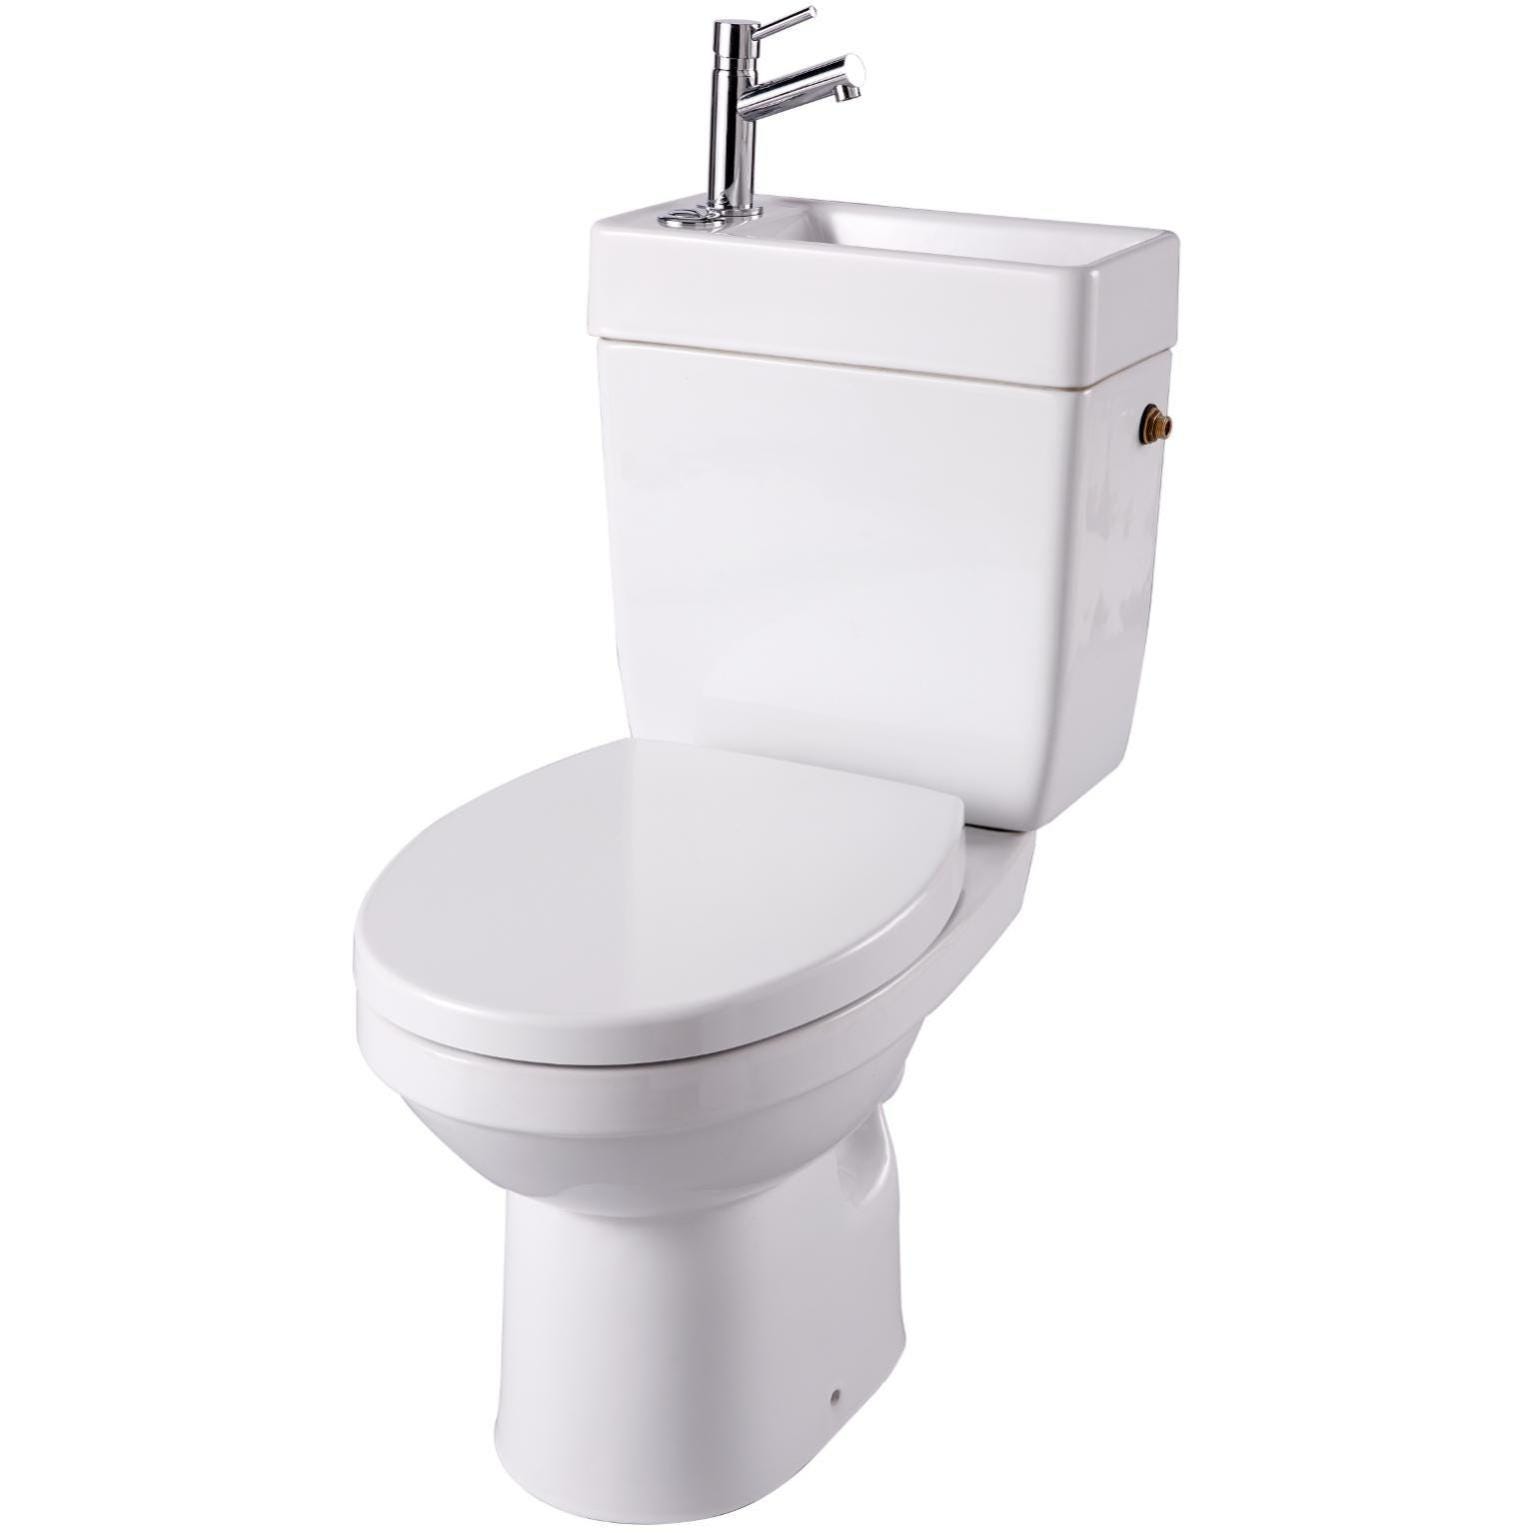 Combiné sanitaire à poser ABS blanc-5138